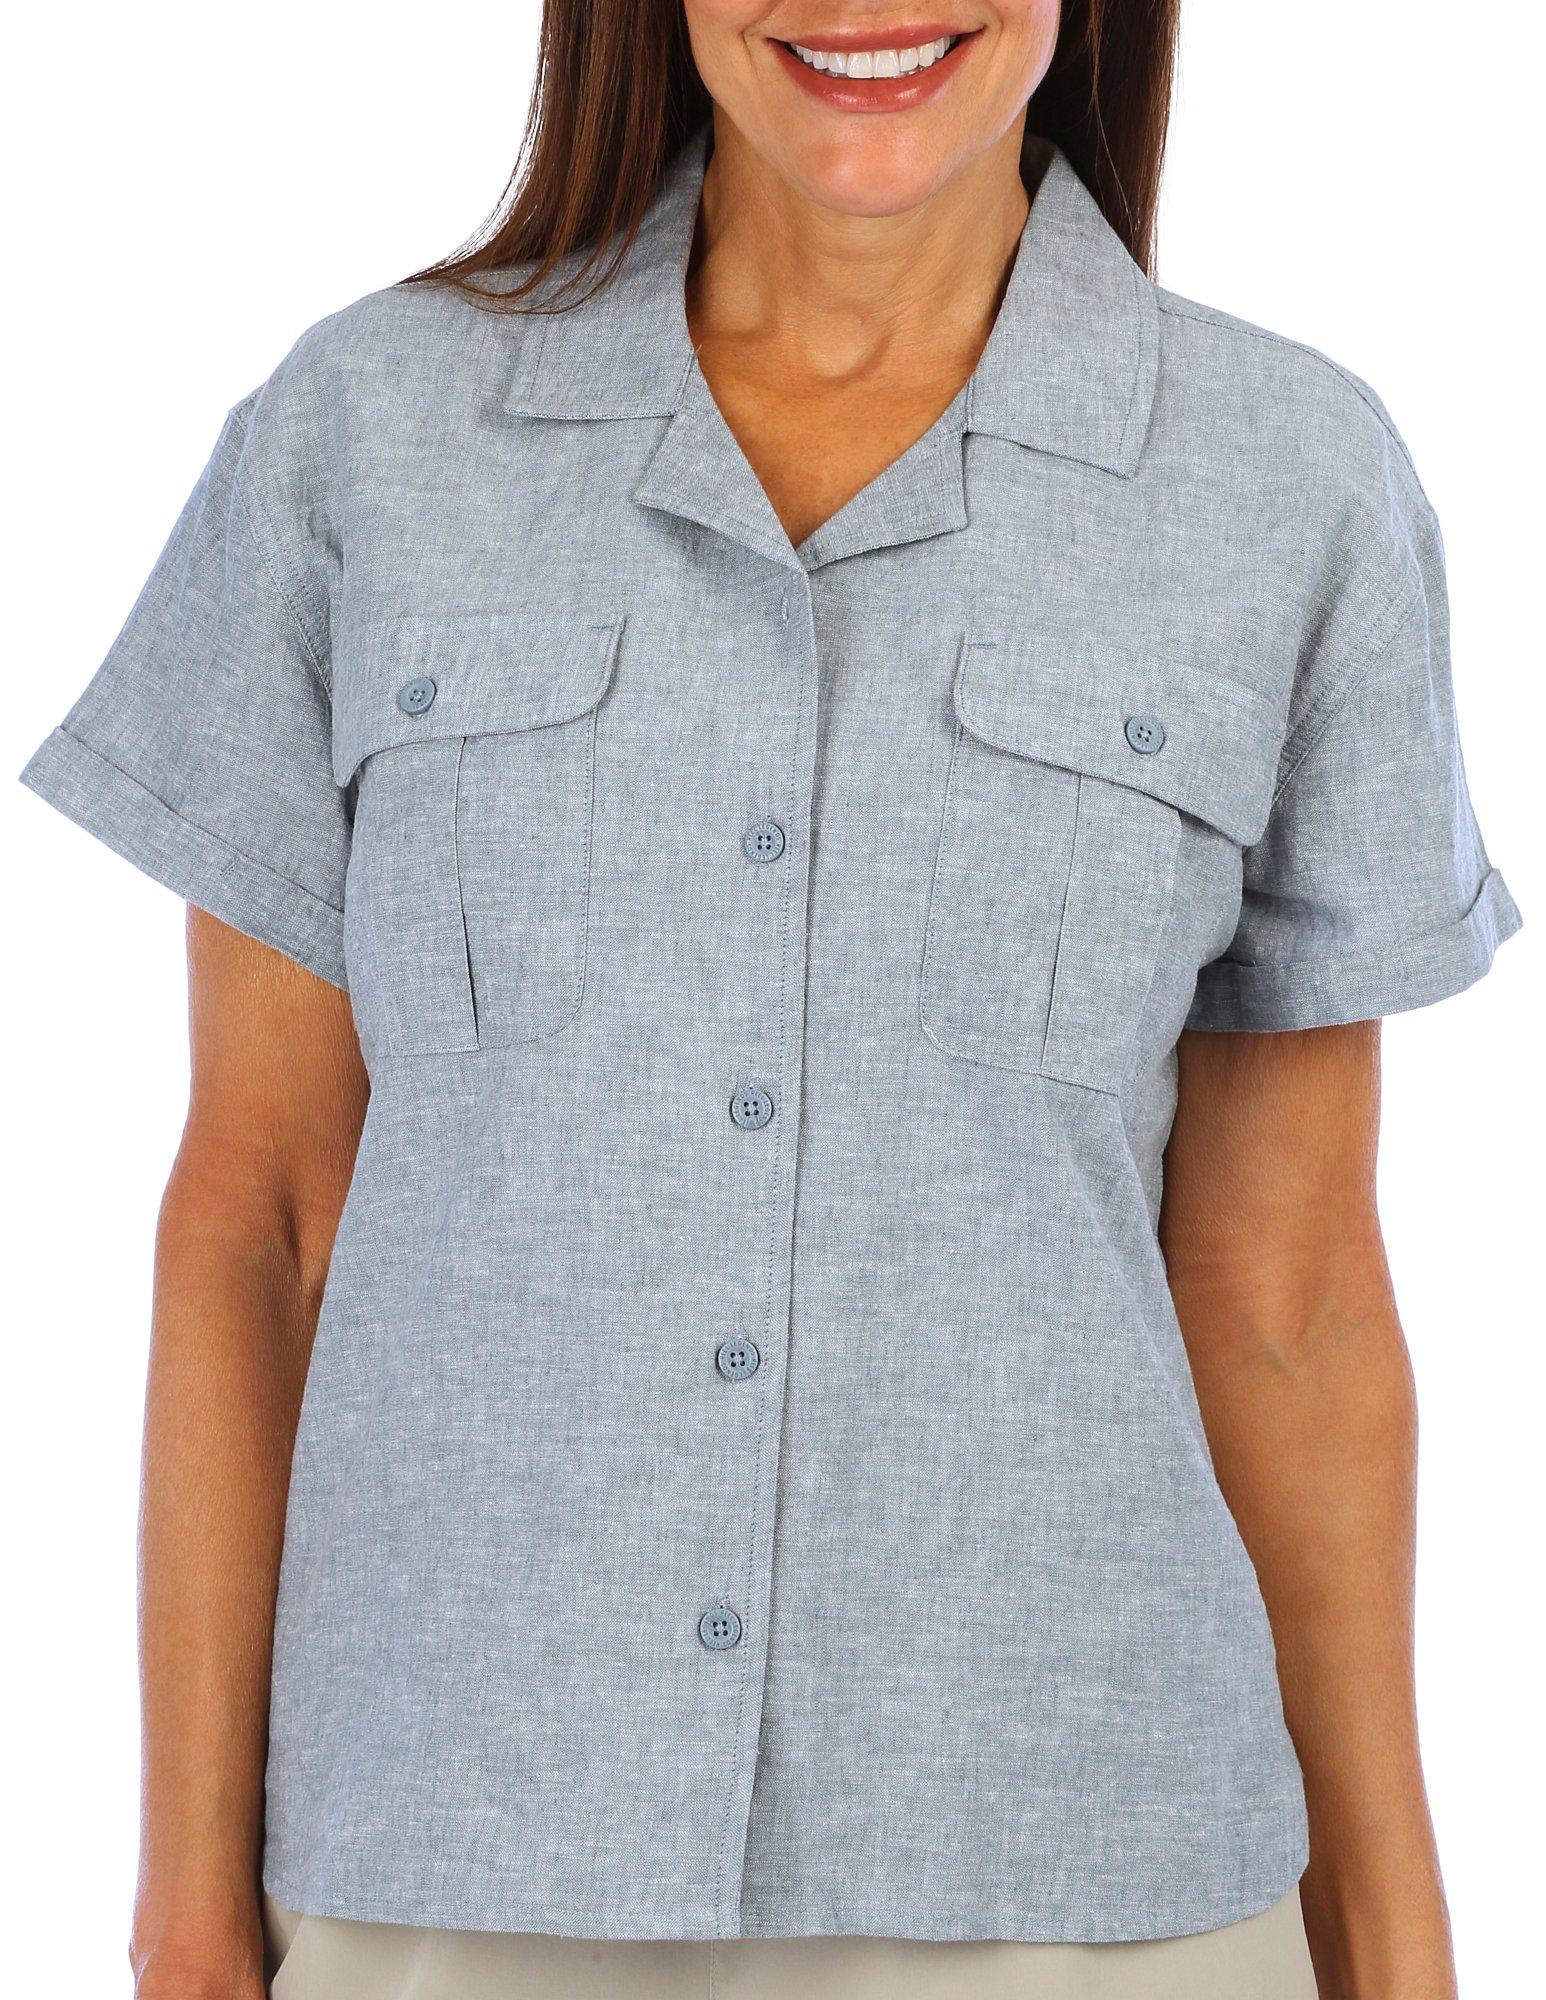 Reel Legends Womens Cotton Linen Short Sleeve Shirt